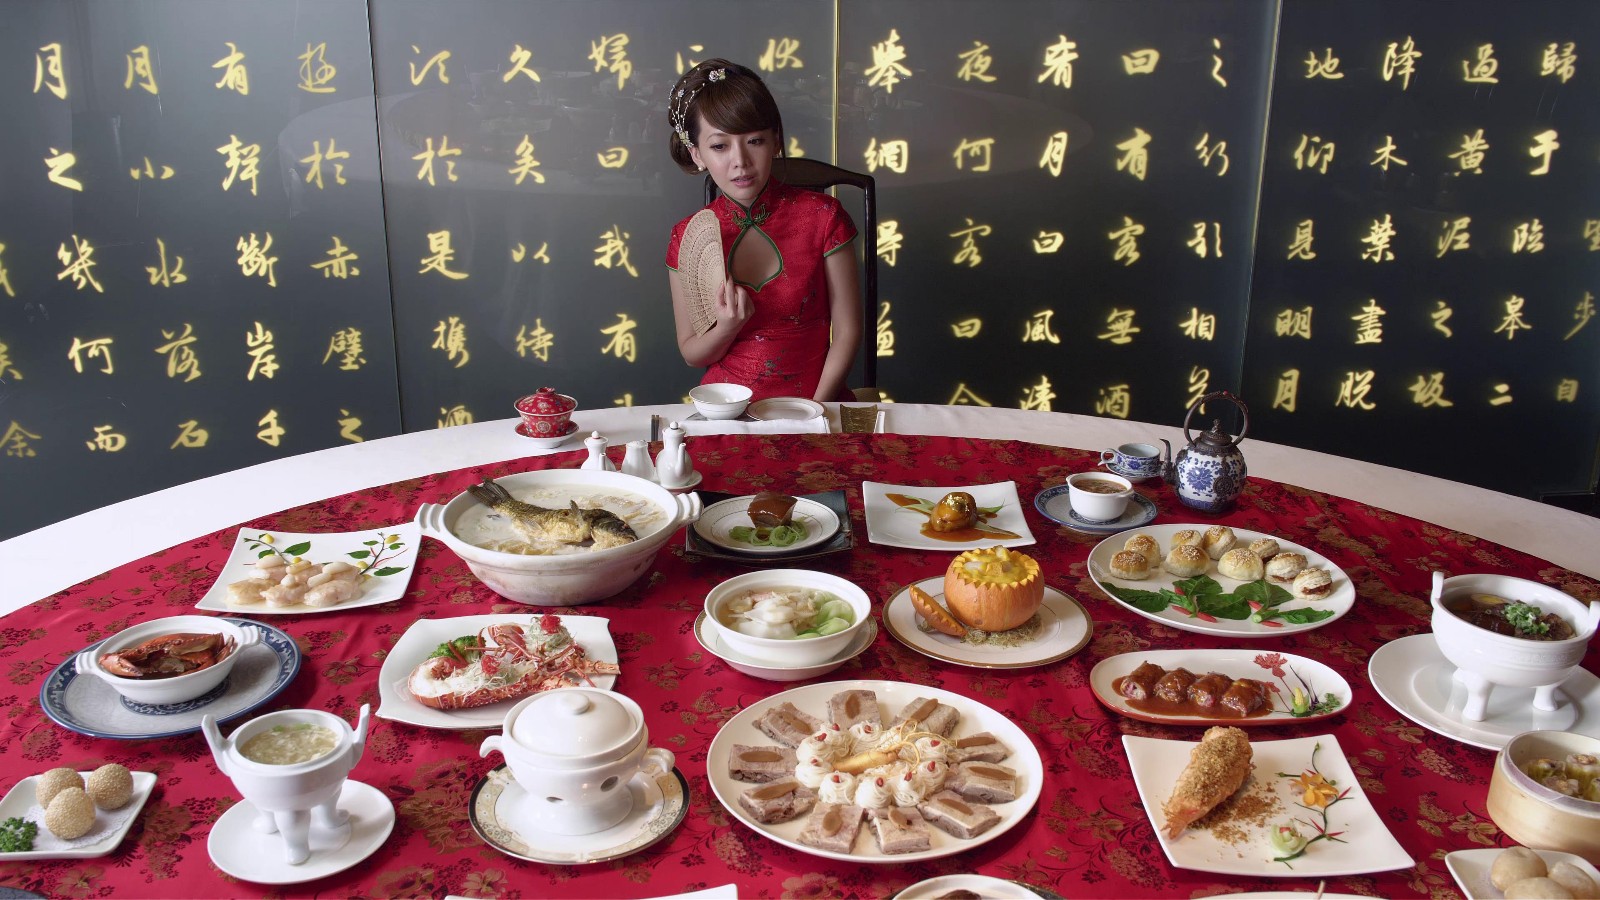 美女高清视频古风典雅餐馆北京烤鸭餐桌美食品尝试吃